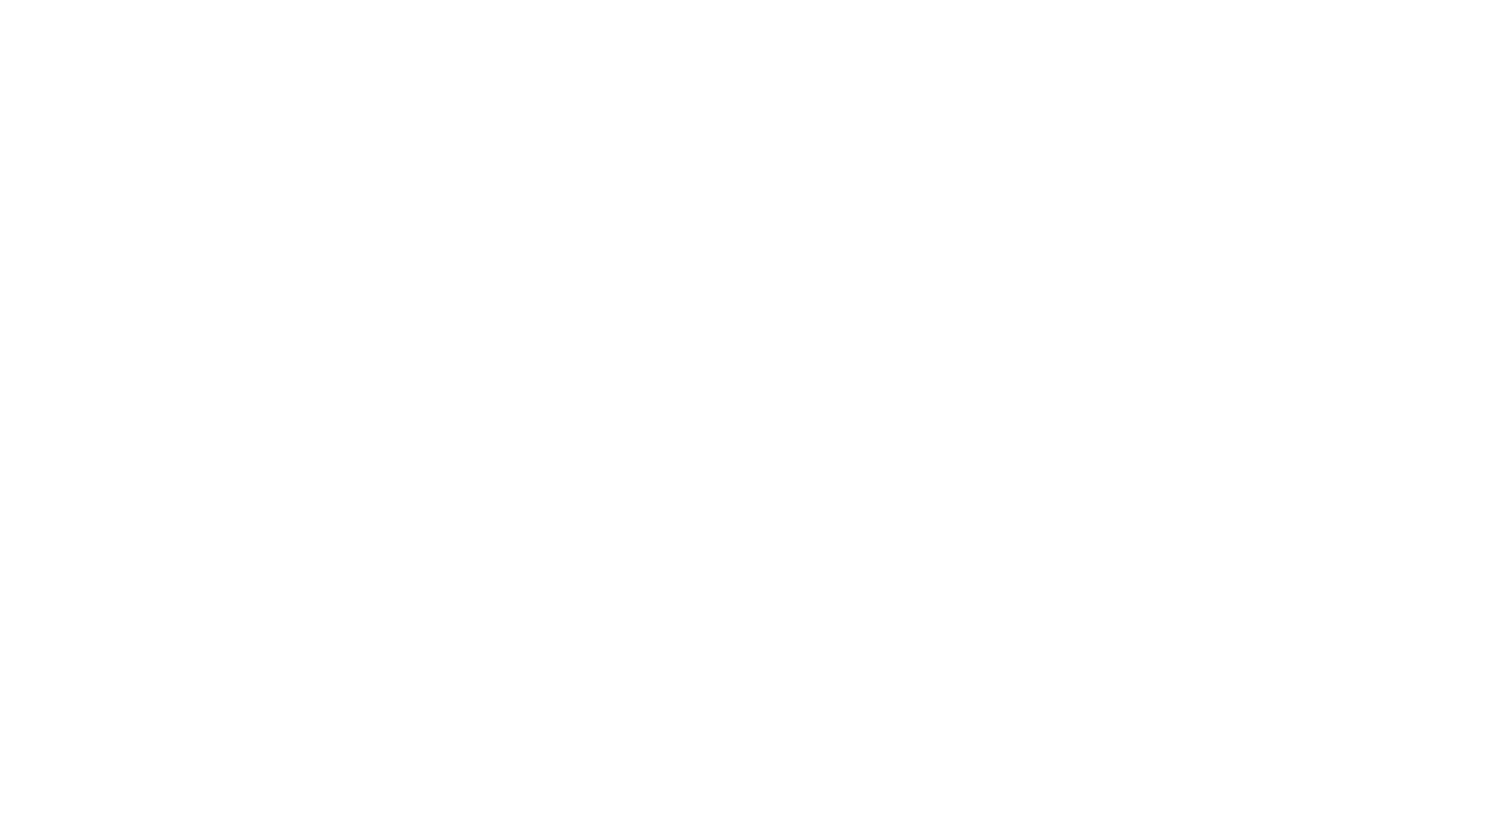 Wrestlerotica